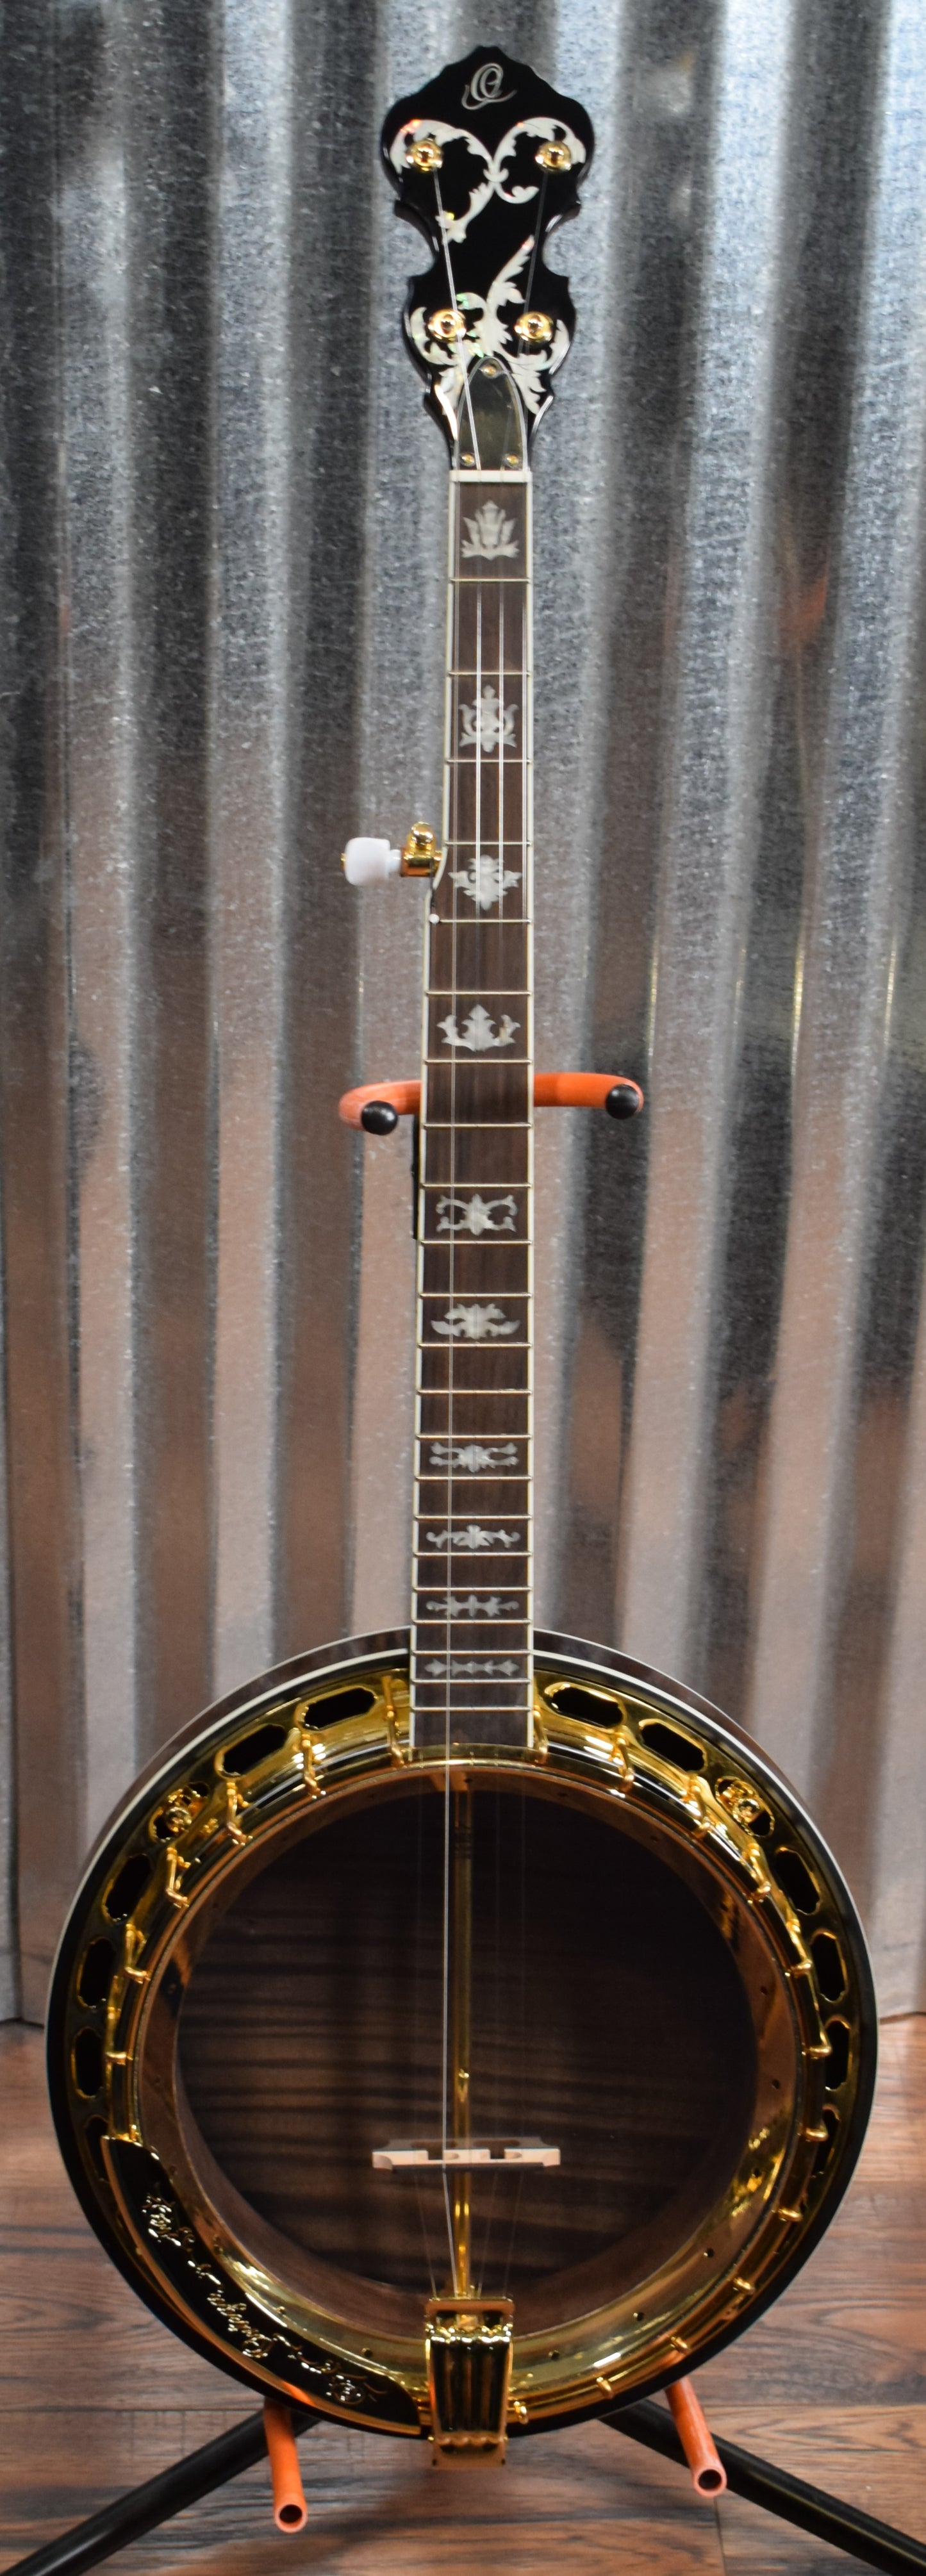 Ortega Guitars Falcon OBJ850-MA Maple 5 String Banjo & Bag #0004